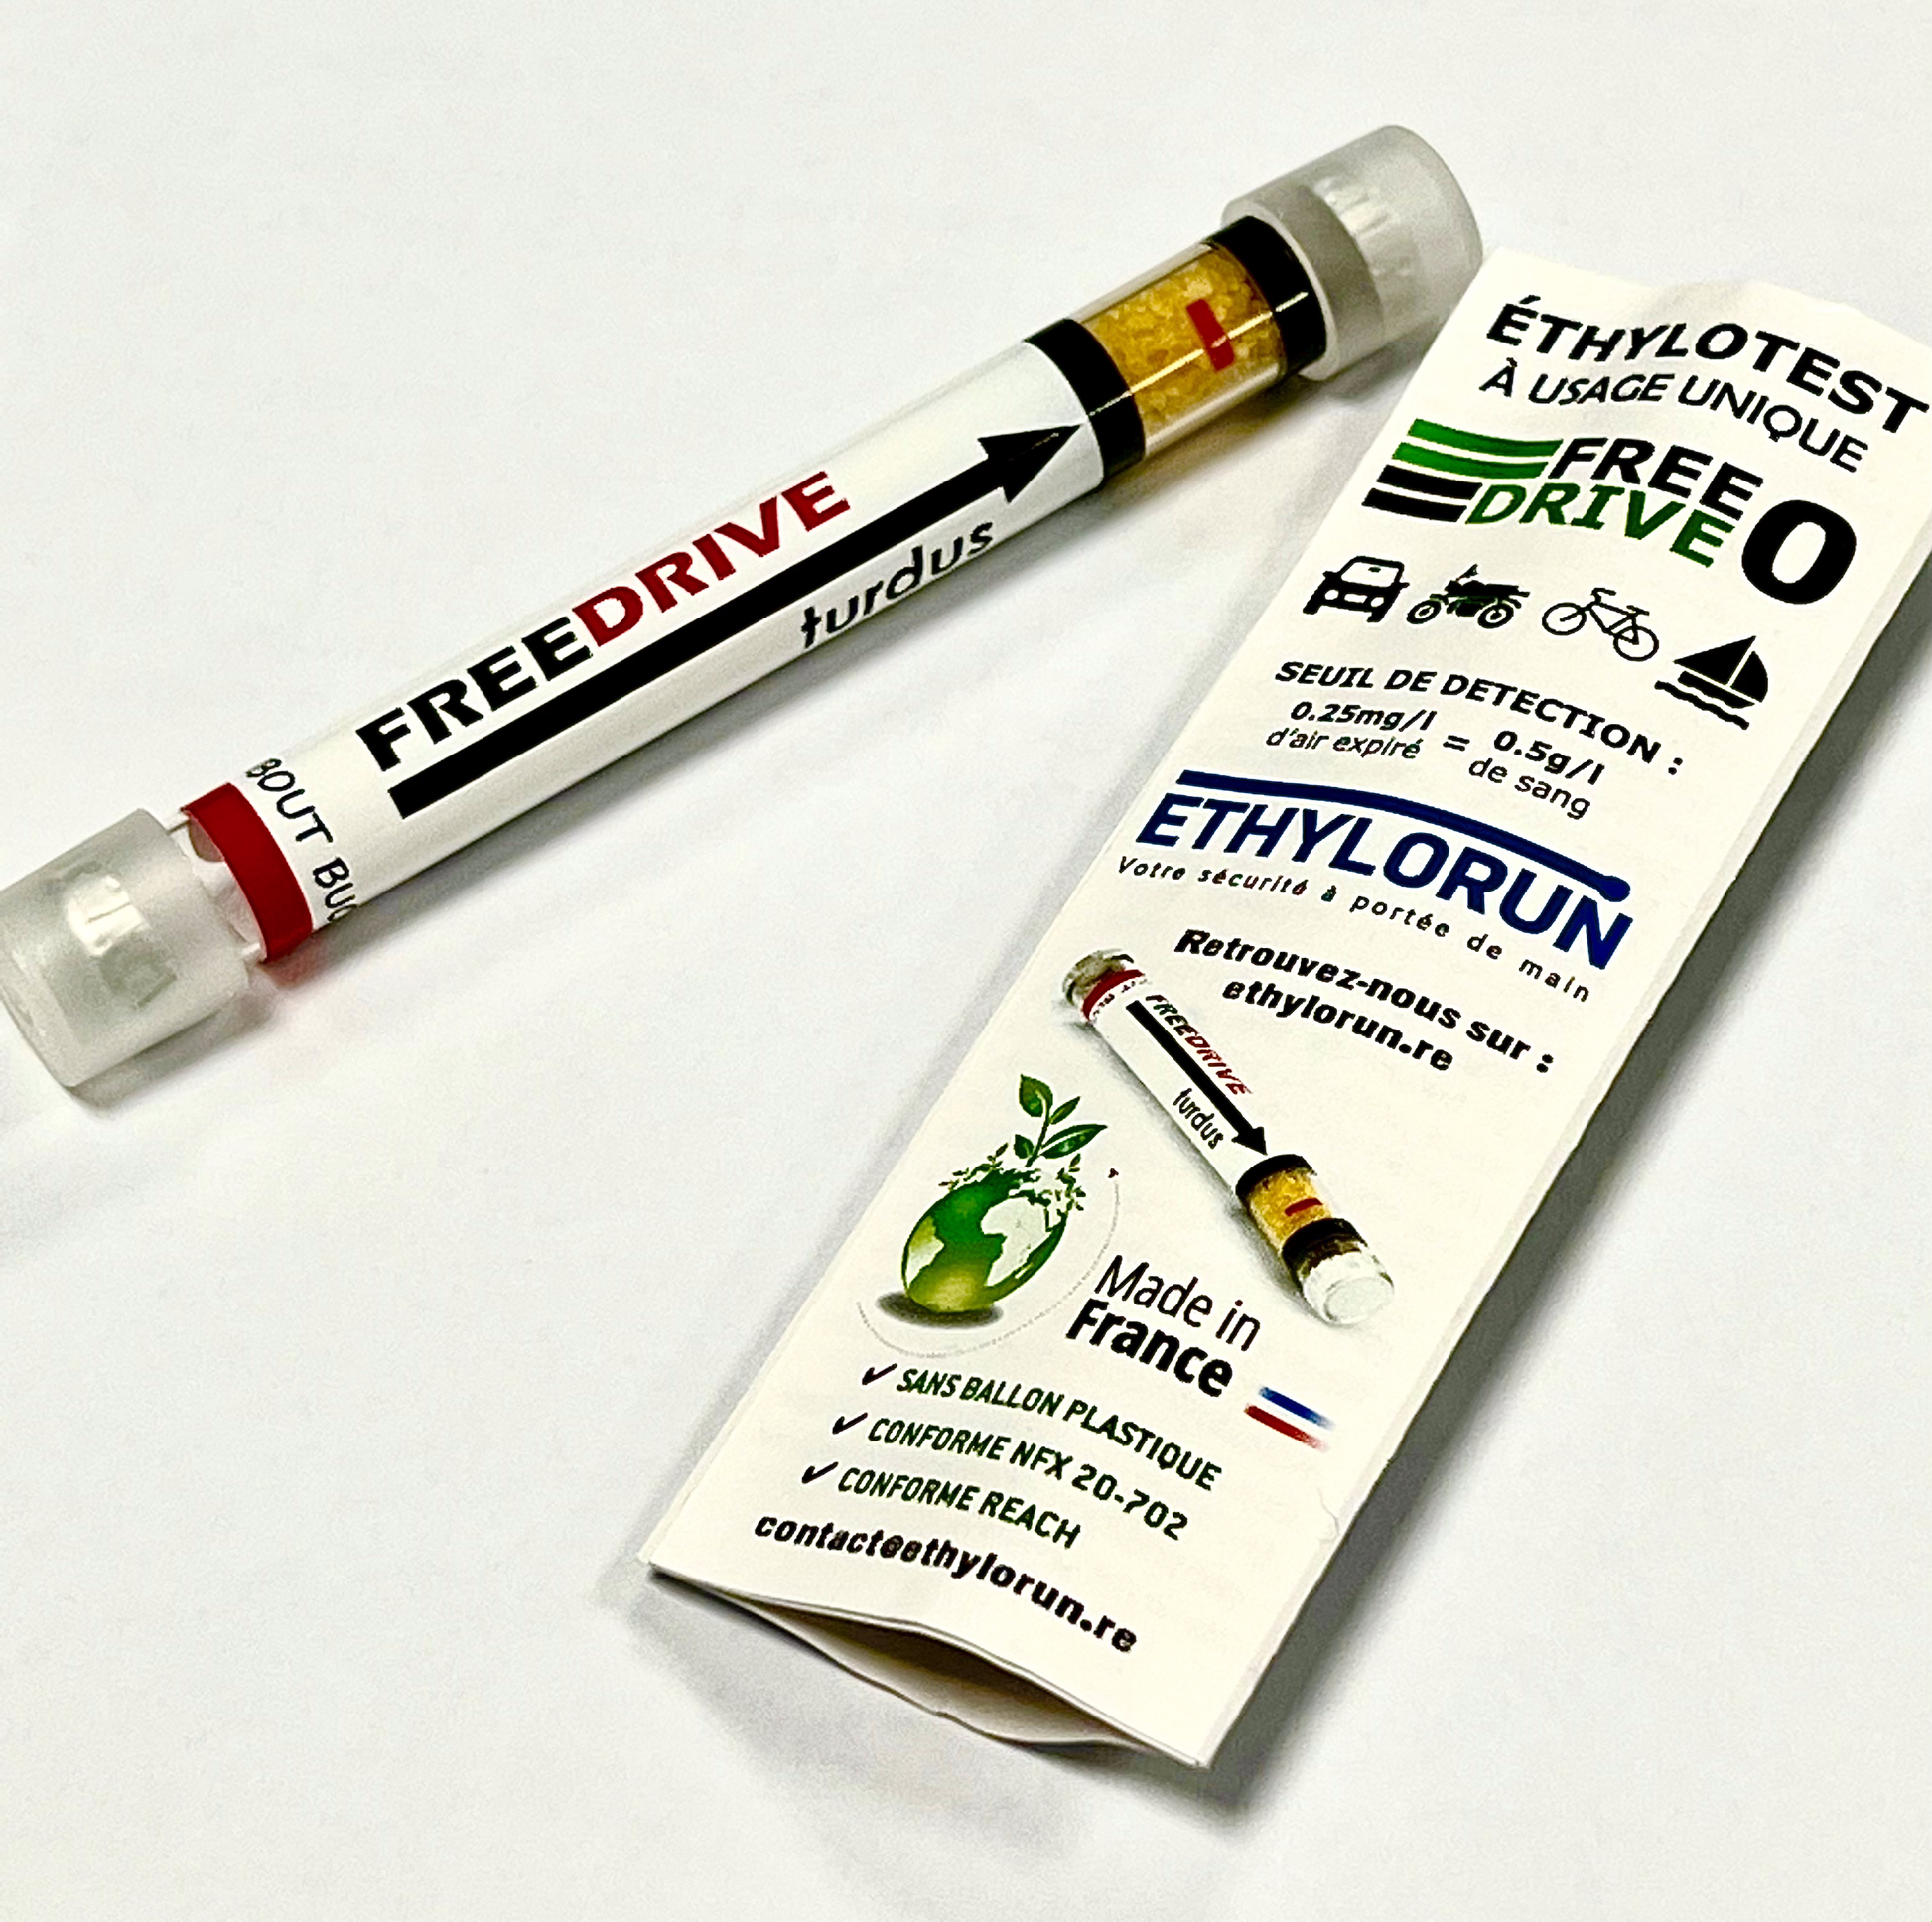 Ethylotest – Usage unique sans ballon 0.5g/L